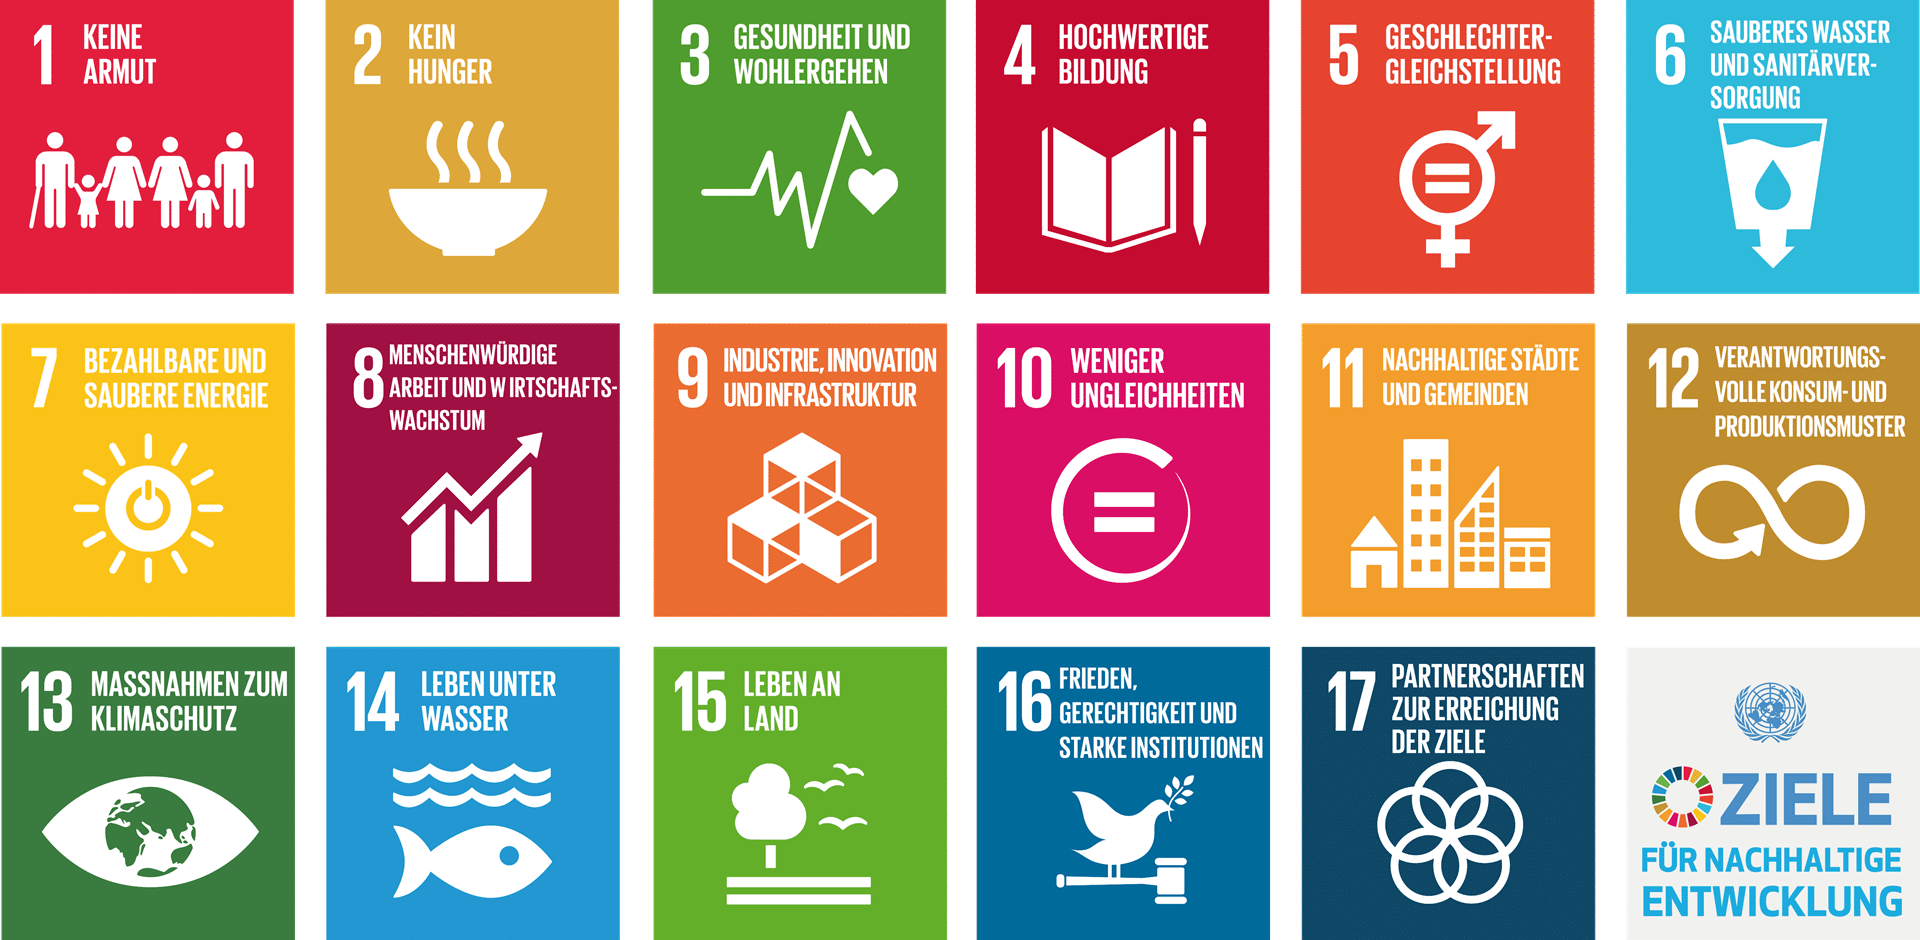 Infografik mit Zielen für nachhaltige Entwicklung